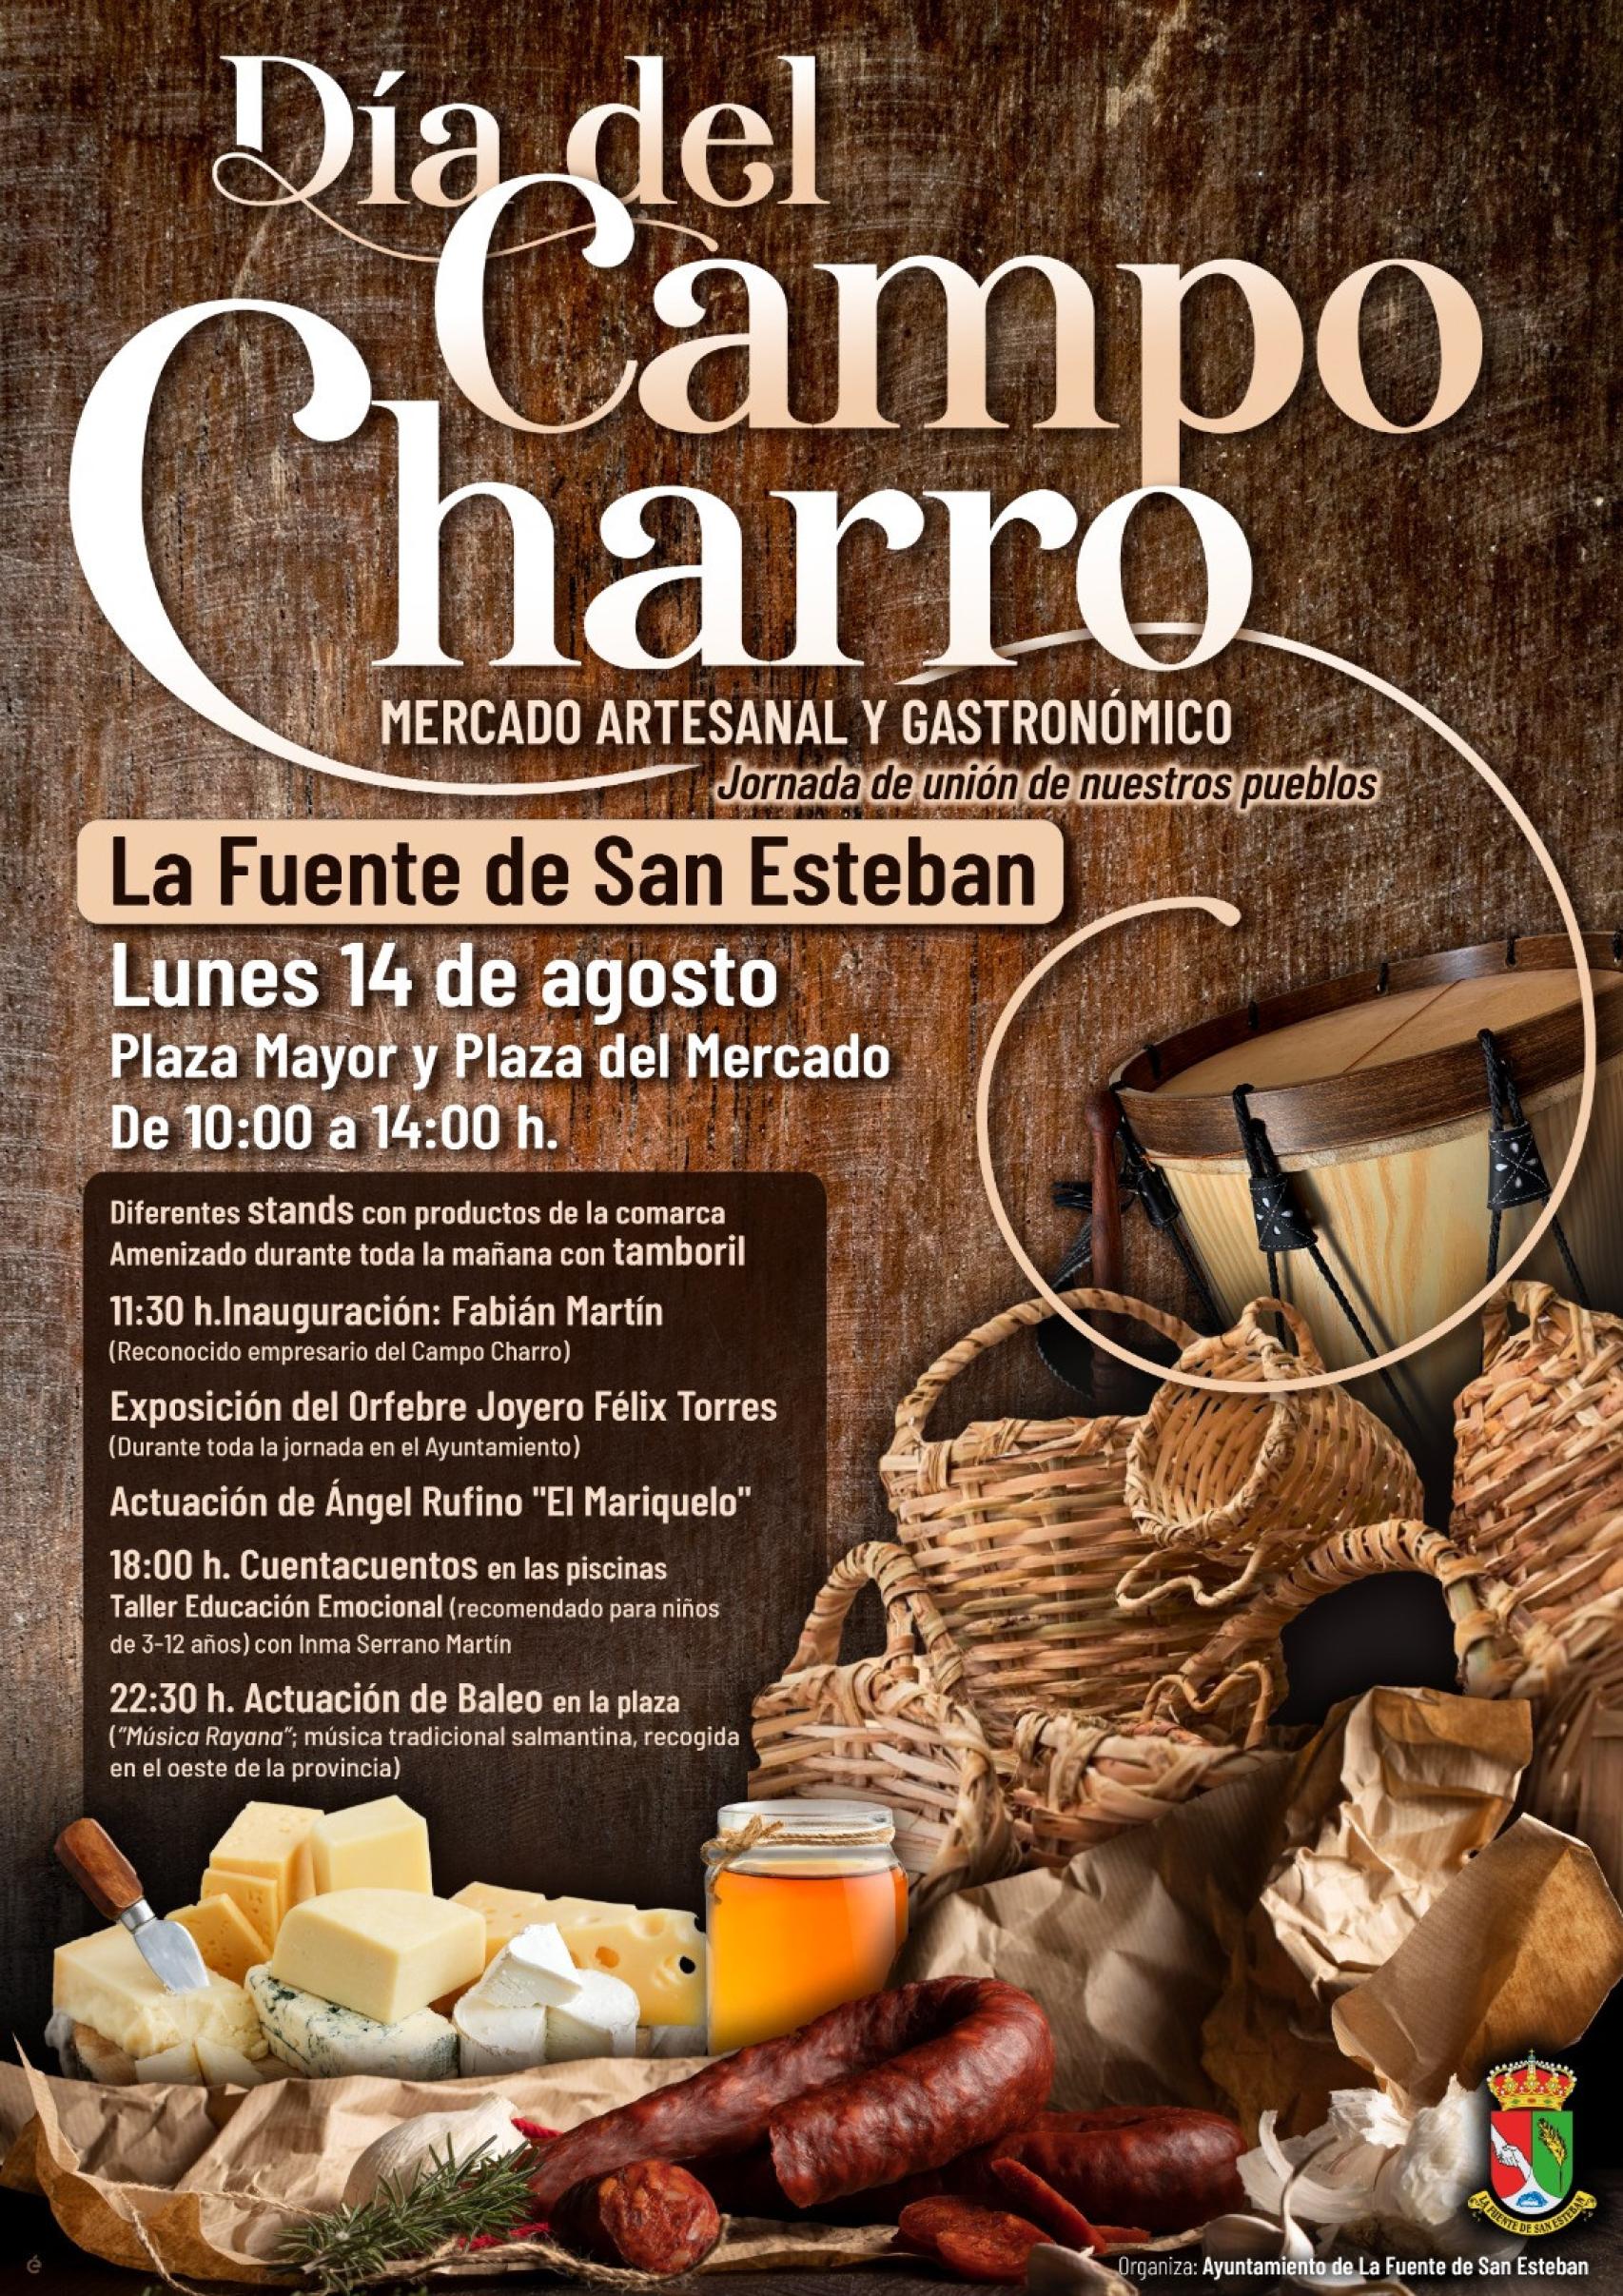 Cartel del Mercado Artesanal y Gastronómico de La Fuente de San Esteban